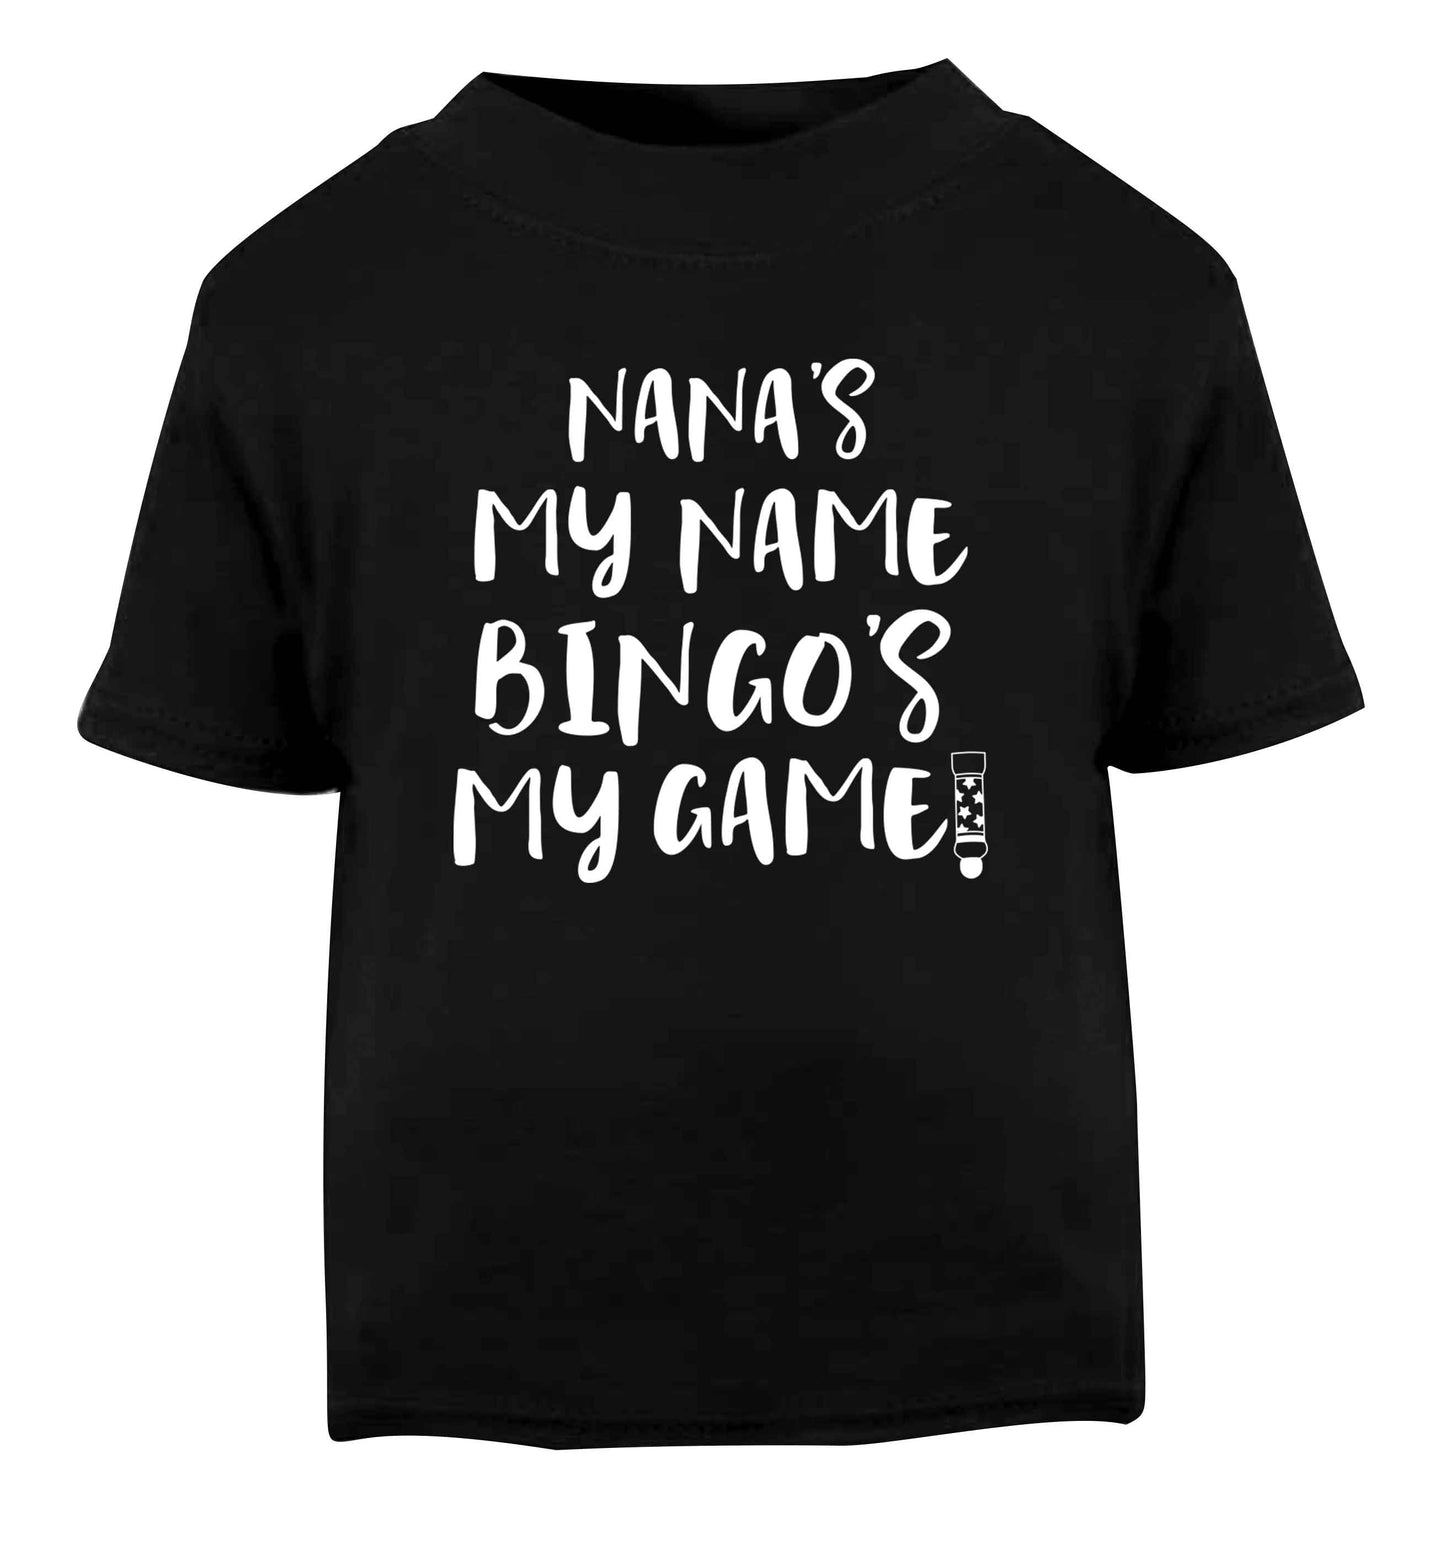 Nana's my name bingo's my game! Black Baby Toddler Tshirt 2 years